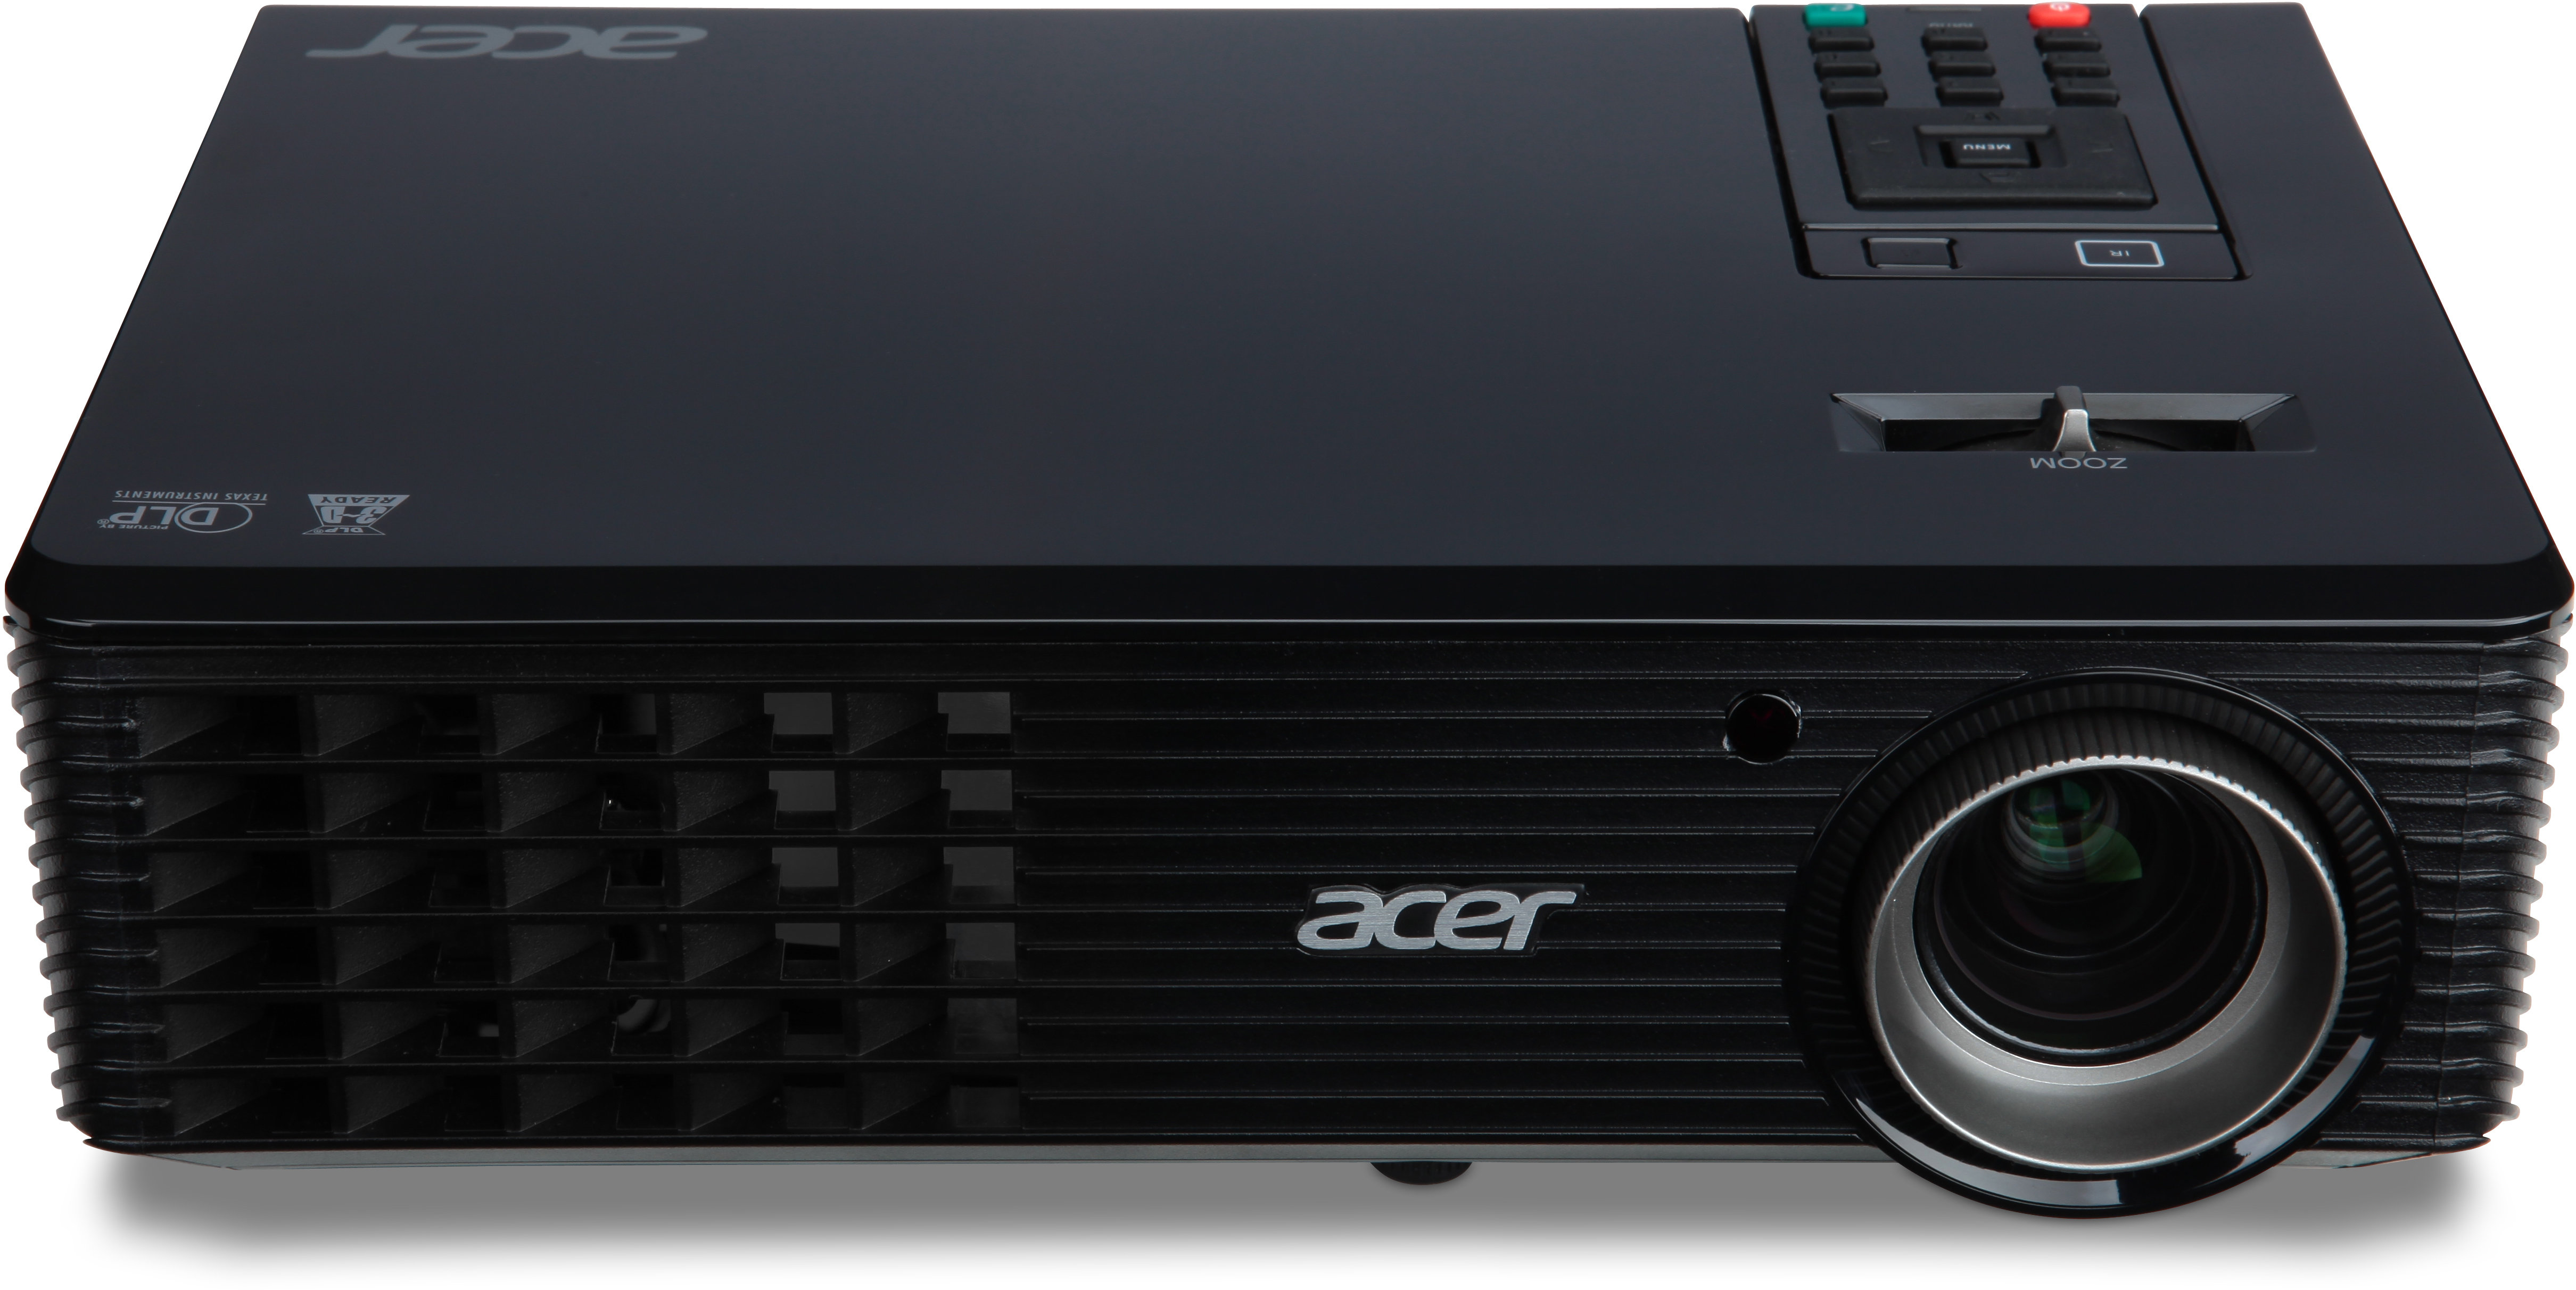 Thay bóng đèn máy chiếu Acer X112, X1161P, X1120H, P5207B